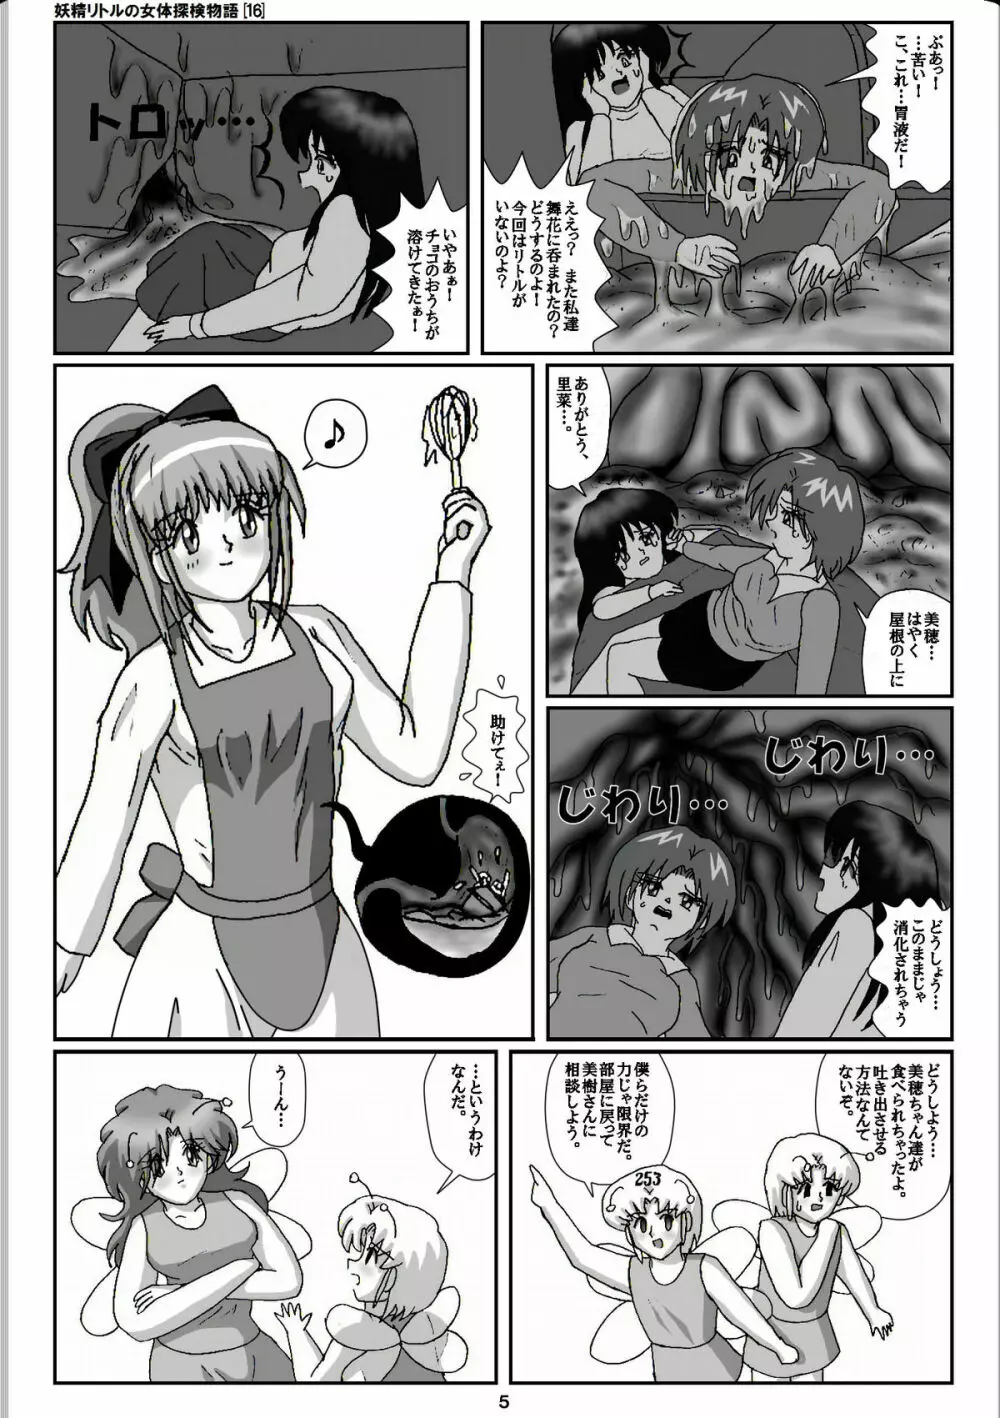 妖精リトルの女体探検物語 16 5ページ